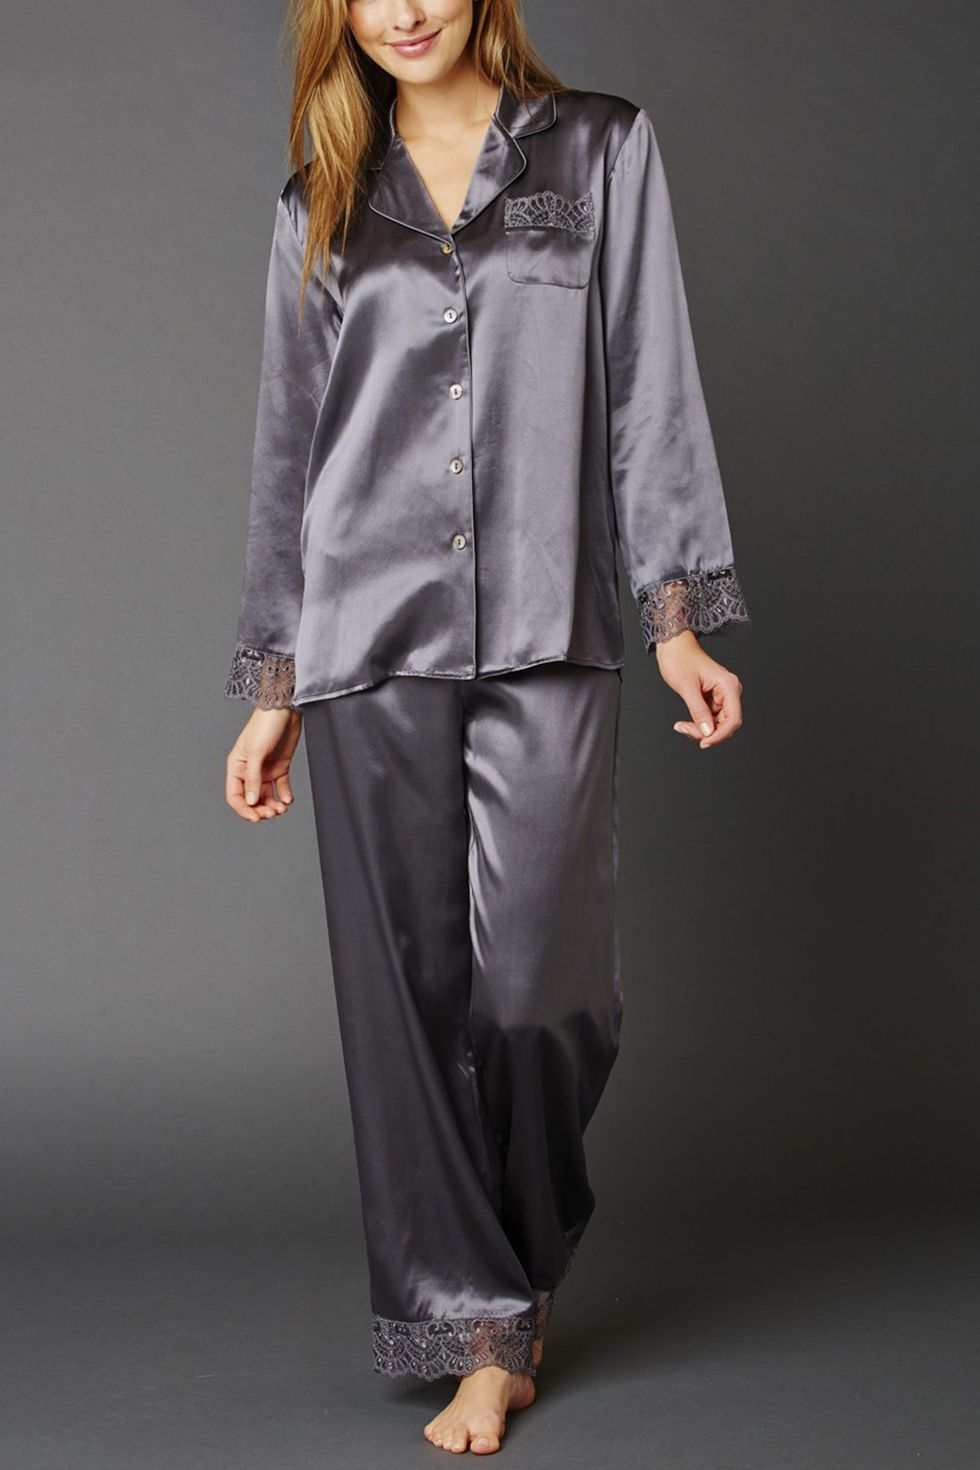 New Sexy Women's Pajamas Fashion Silk Pajamas for Women Sleepwear Pyjamas  Silk Satin Cami Top and Shorts Pajamas for Women